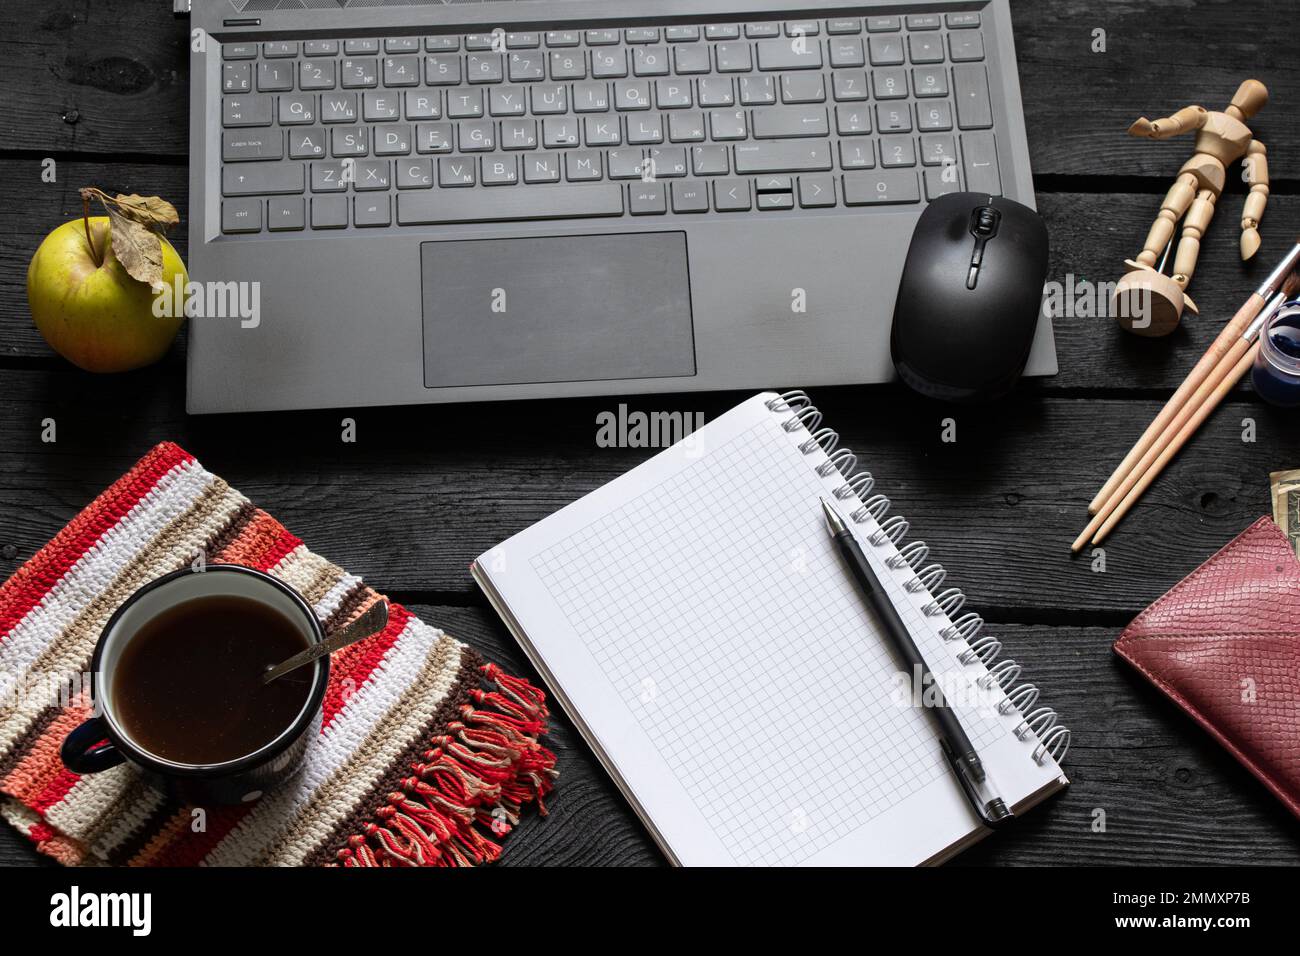 la tazza nera del blocco note del laptop con i soldi del caffè si trovano sul tavolo nero di legno di lavoro, sul laptop sul tavolo di lavoro durante il lavoro, sul processo creativo, sul freelance Foto Stock